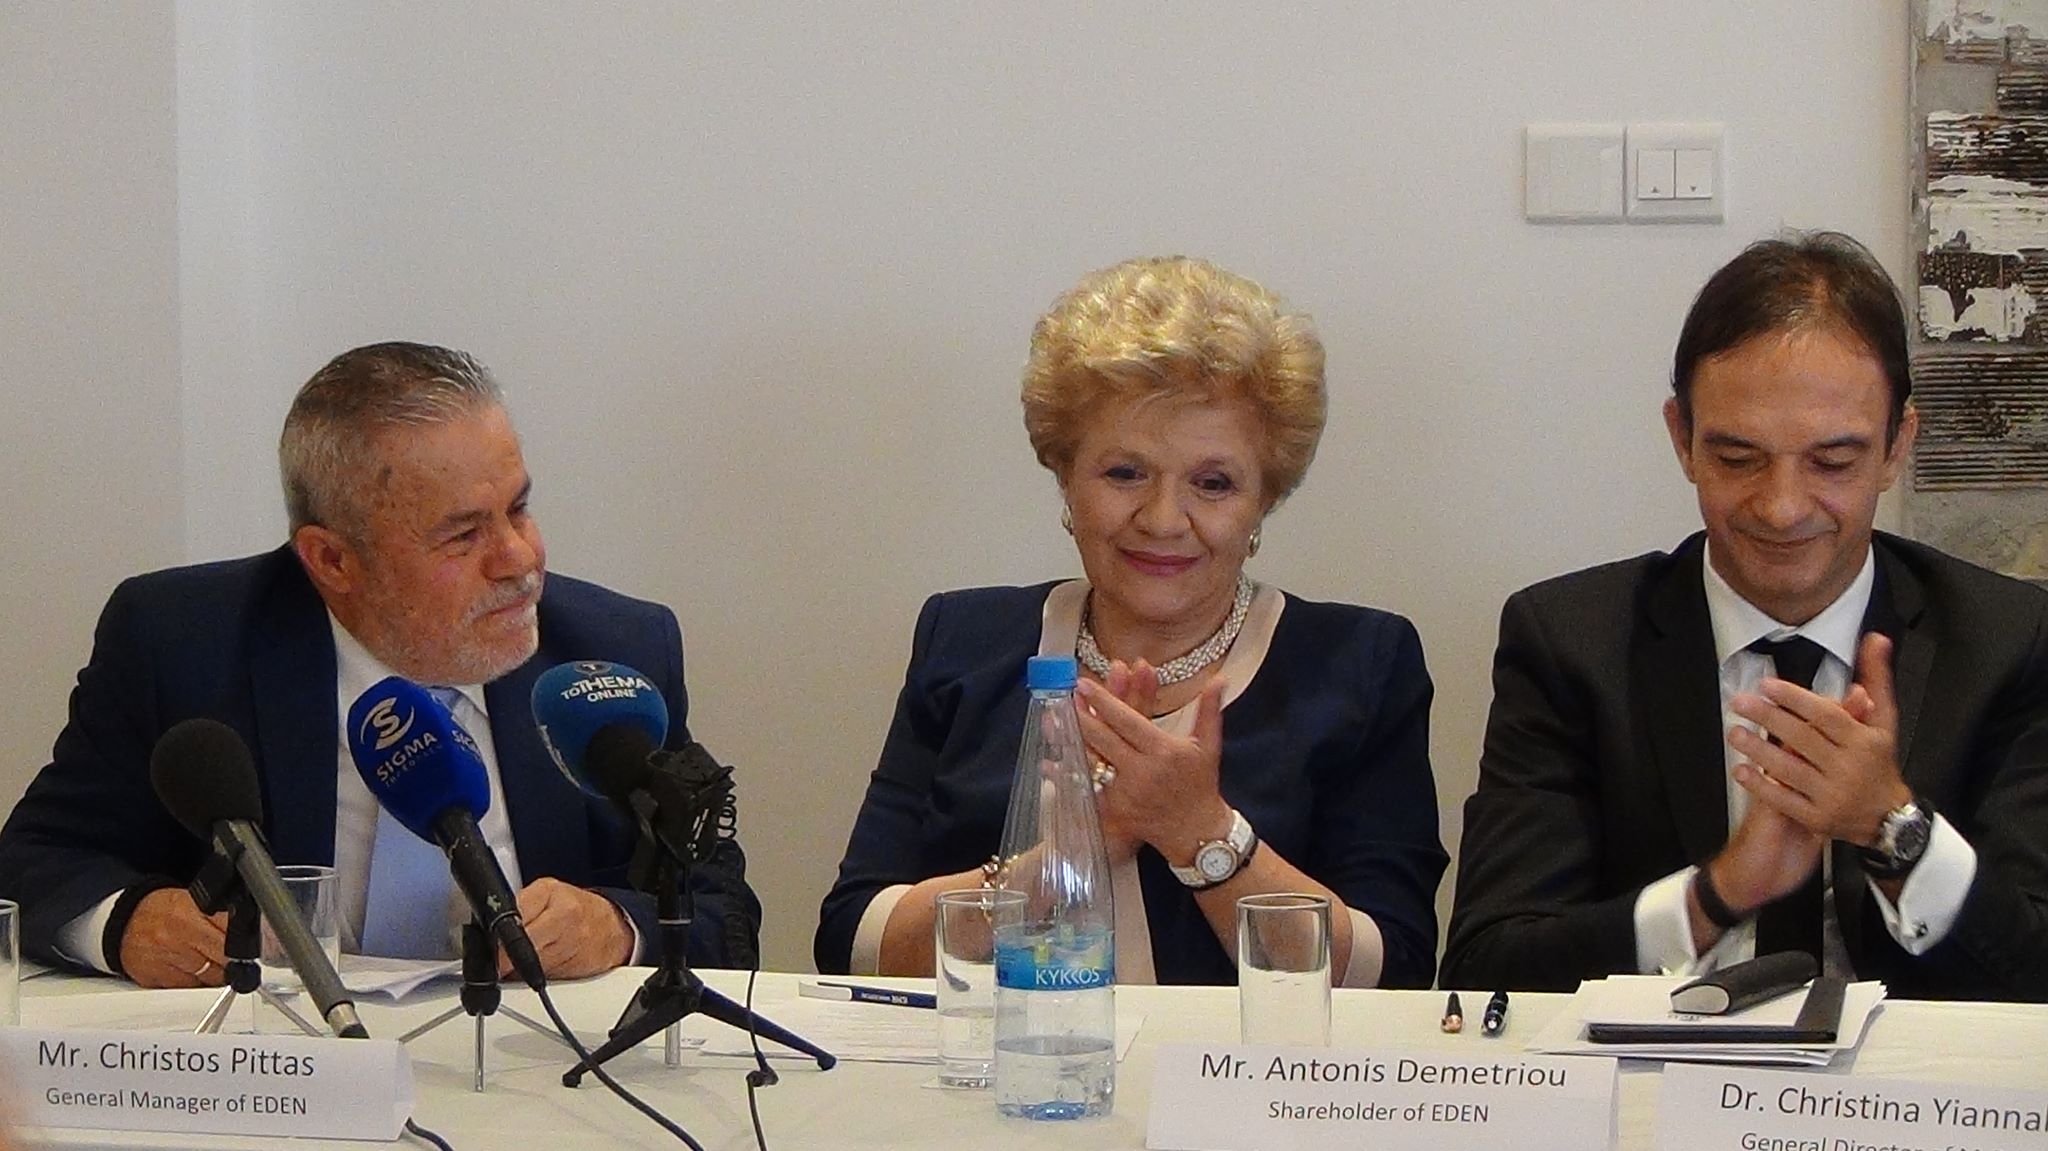 Χριστίνα Γιαννάκη: «Πολύ σημαντική η συμφωνία EDEN - ICMR - Ετοιμάζουμε νομοσχέδιο για υπηρεσίες αποκατάστασης»